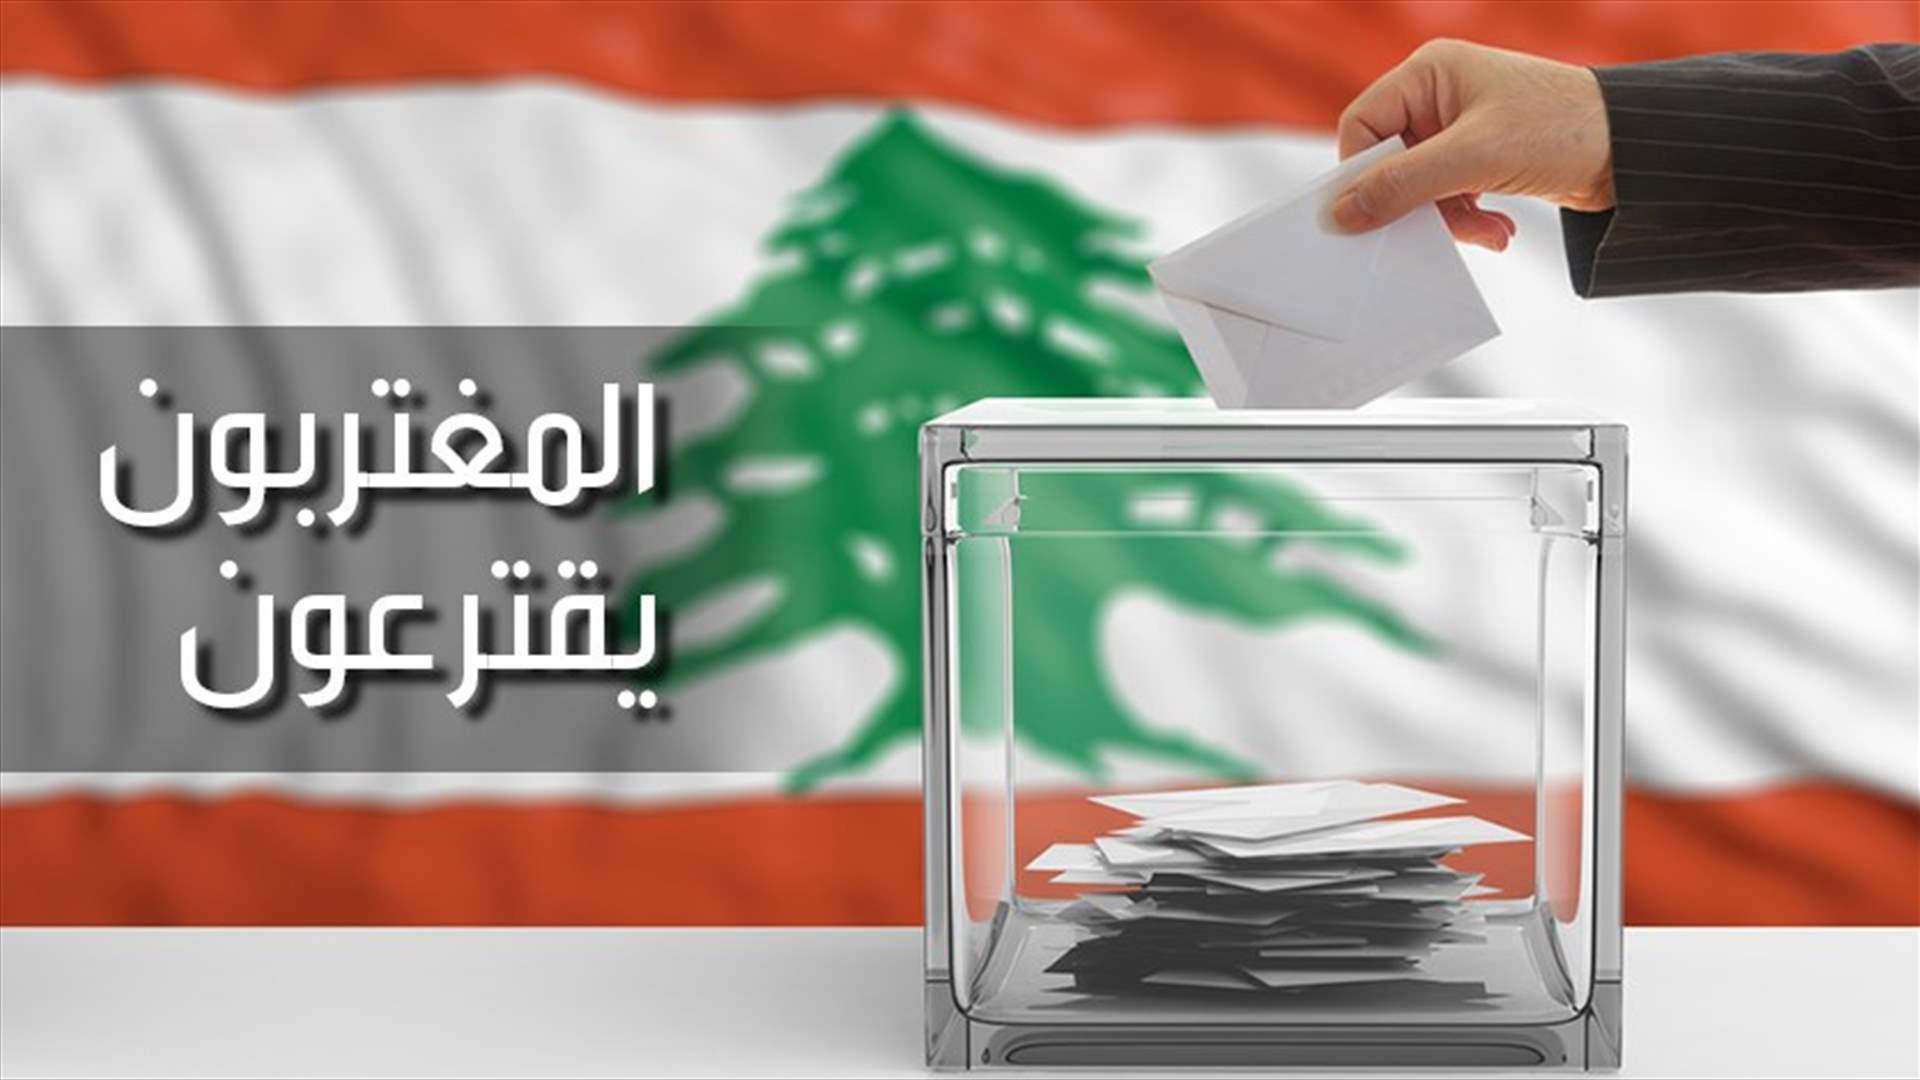 كم بلغ عدد المقترعين اللبنانيين في الدول العربية الست؟